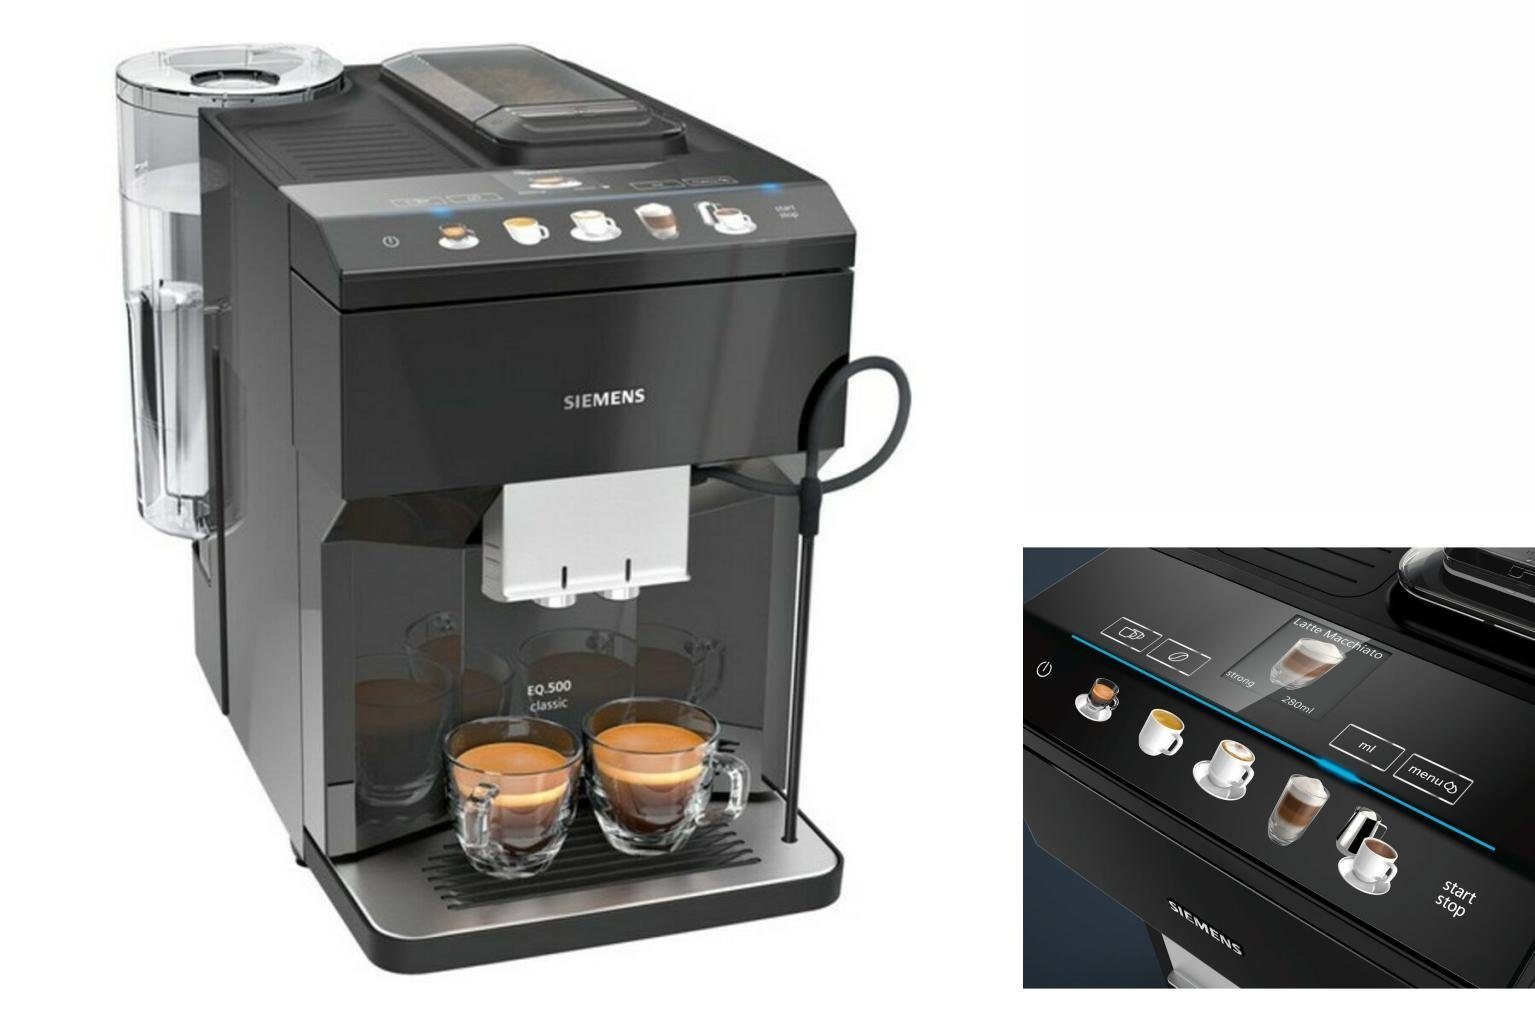 SIEMENS Kaffeevollautomat Superautomatische Kaffeemaschine Siemens AG TP503R09 Schwarz Graphit 1